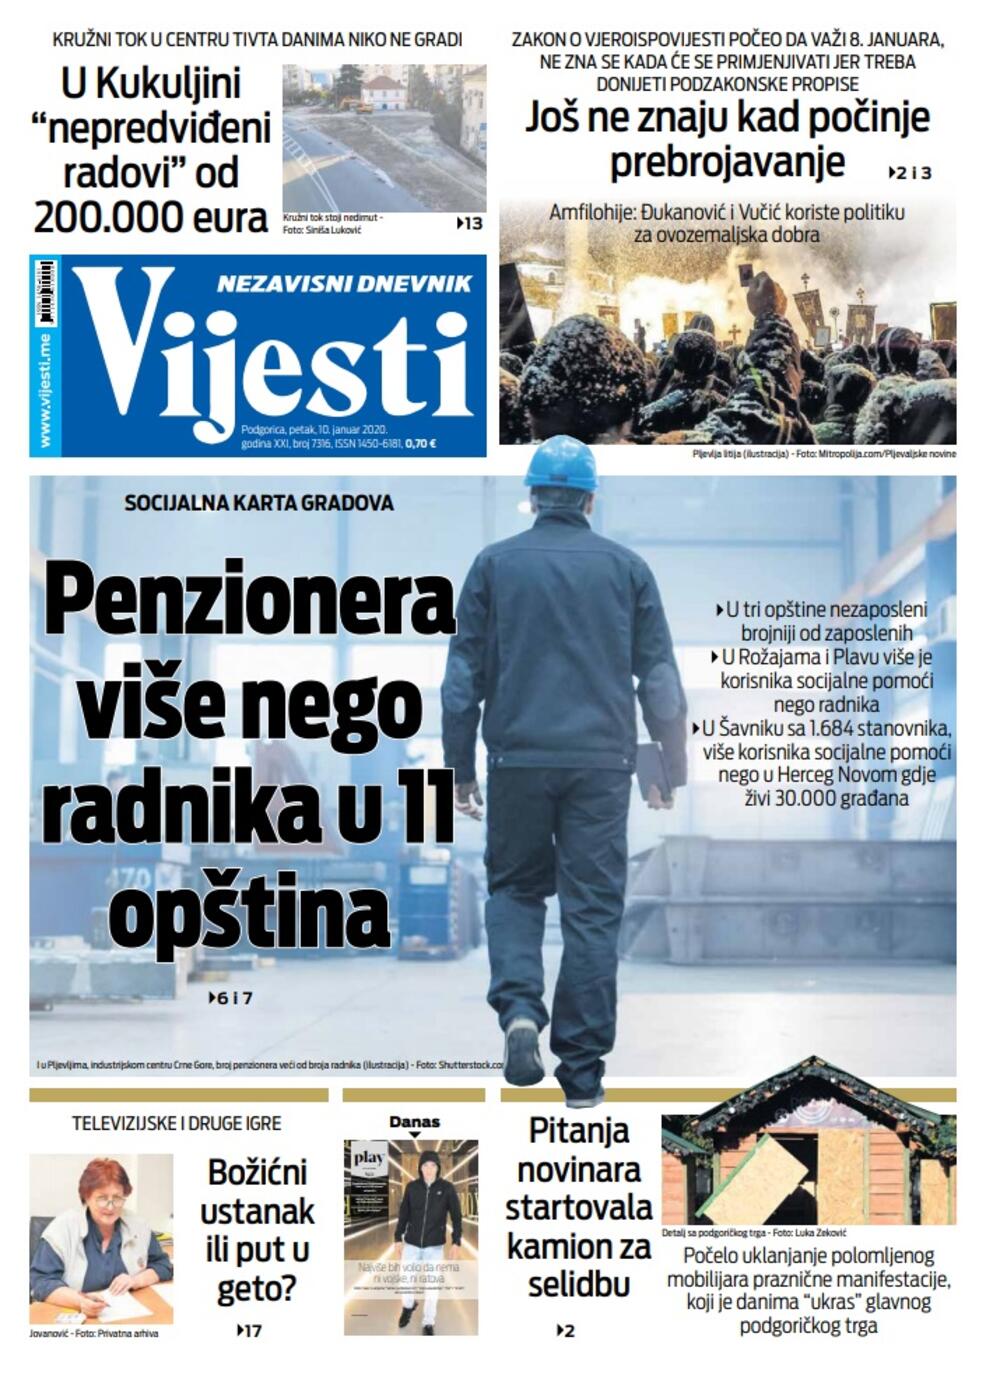 Naslovna strana "Vijesti" za 10. januar 2020., Foto: Vijesti